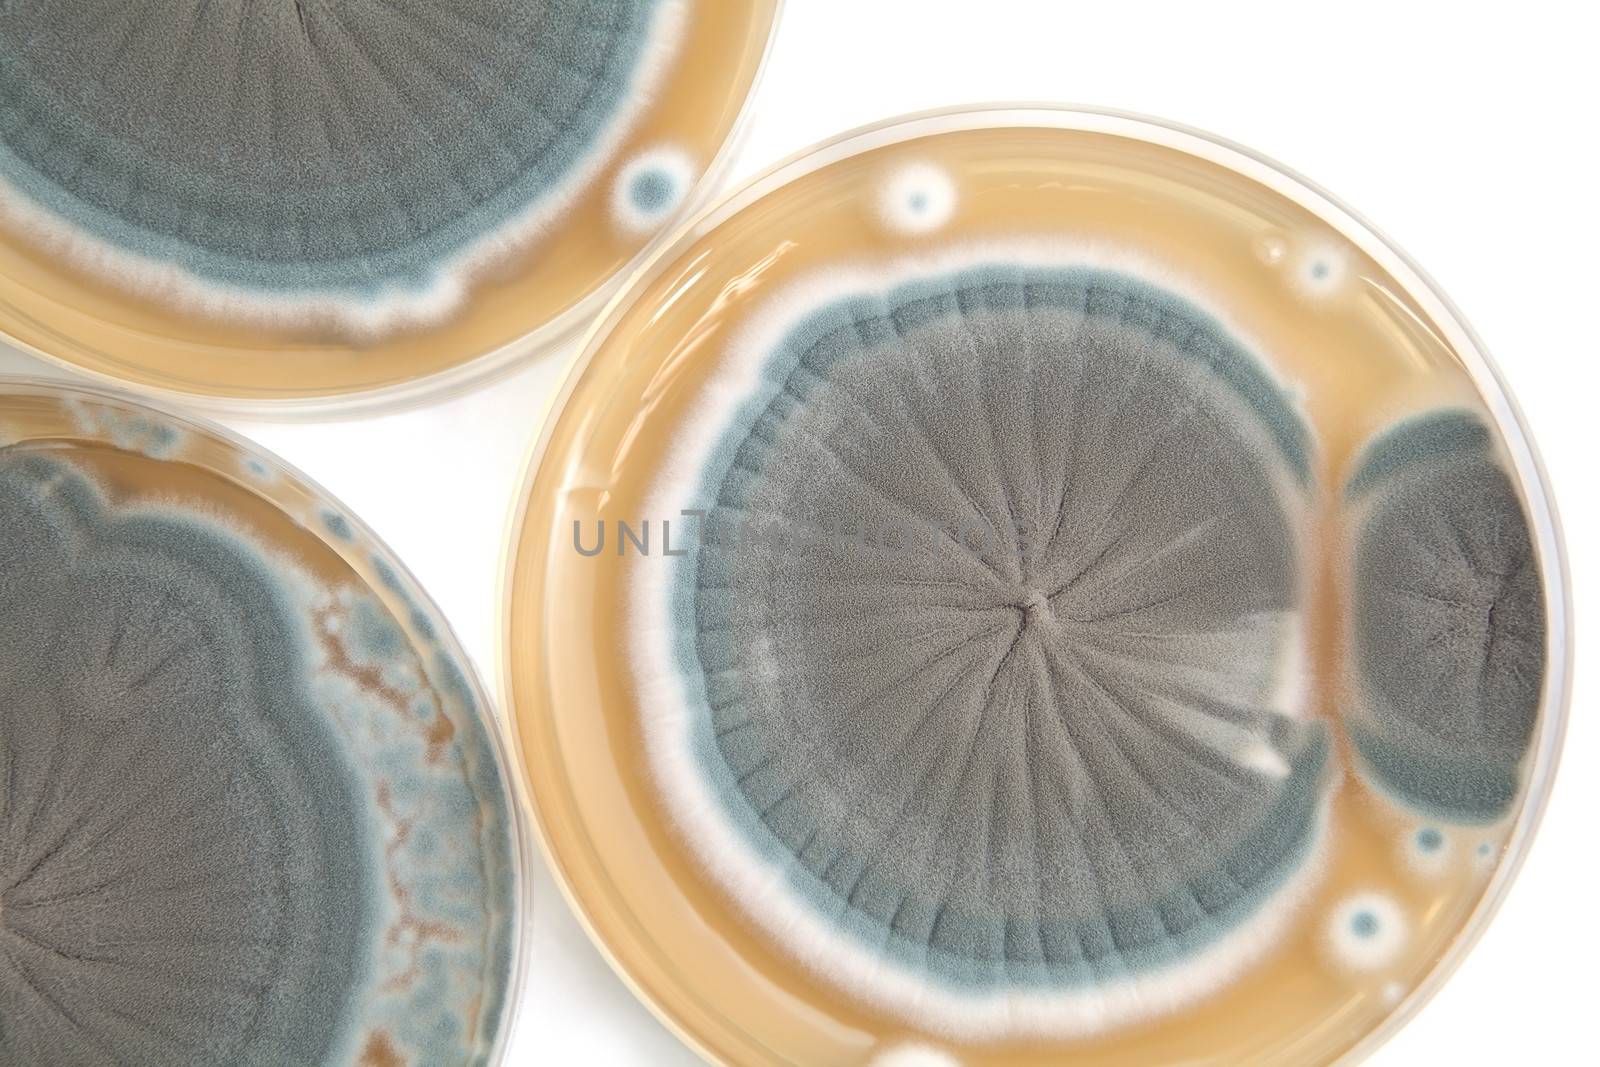 Penicillium fungi on Petri dishes background